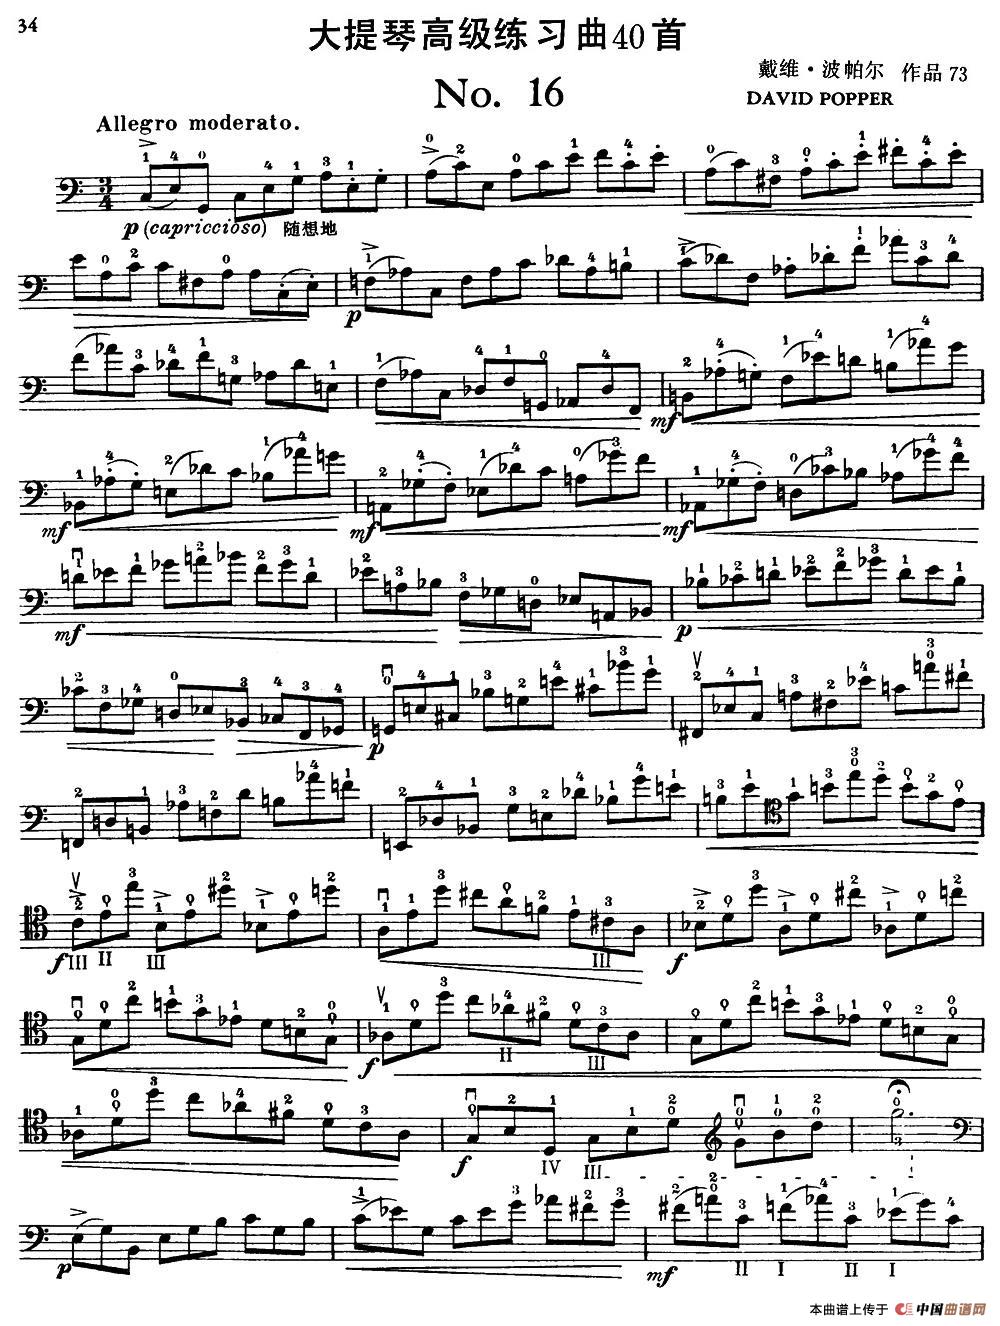 大提琴高级练习曲40首 No.16